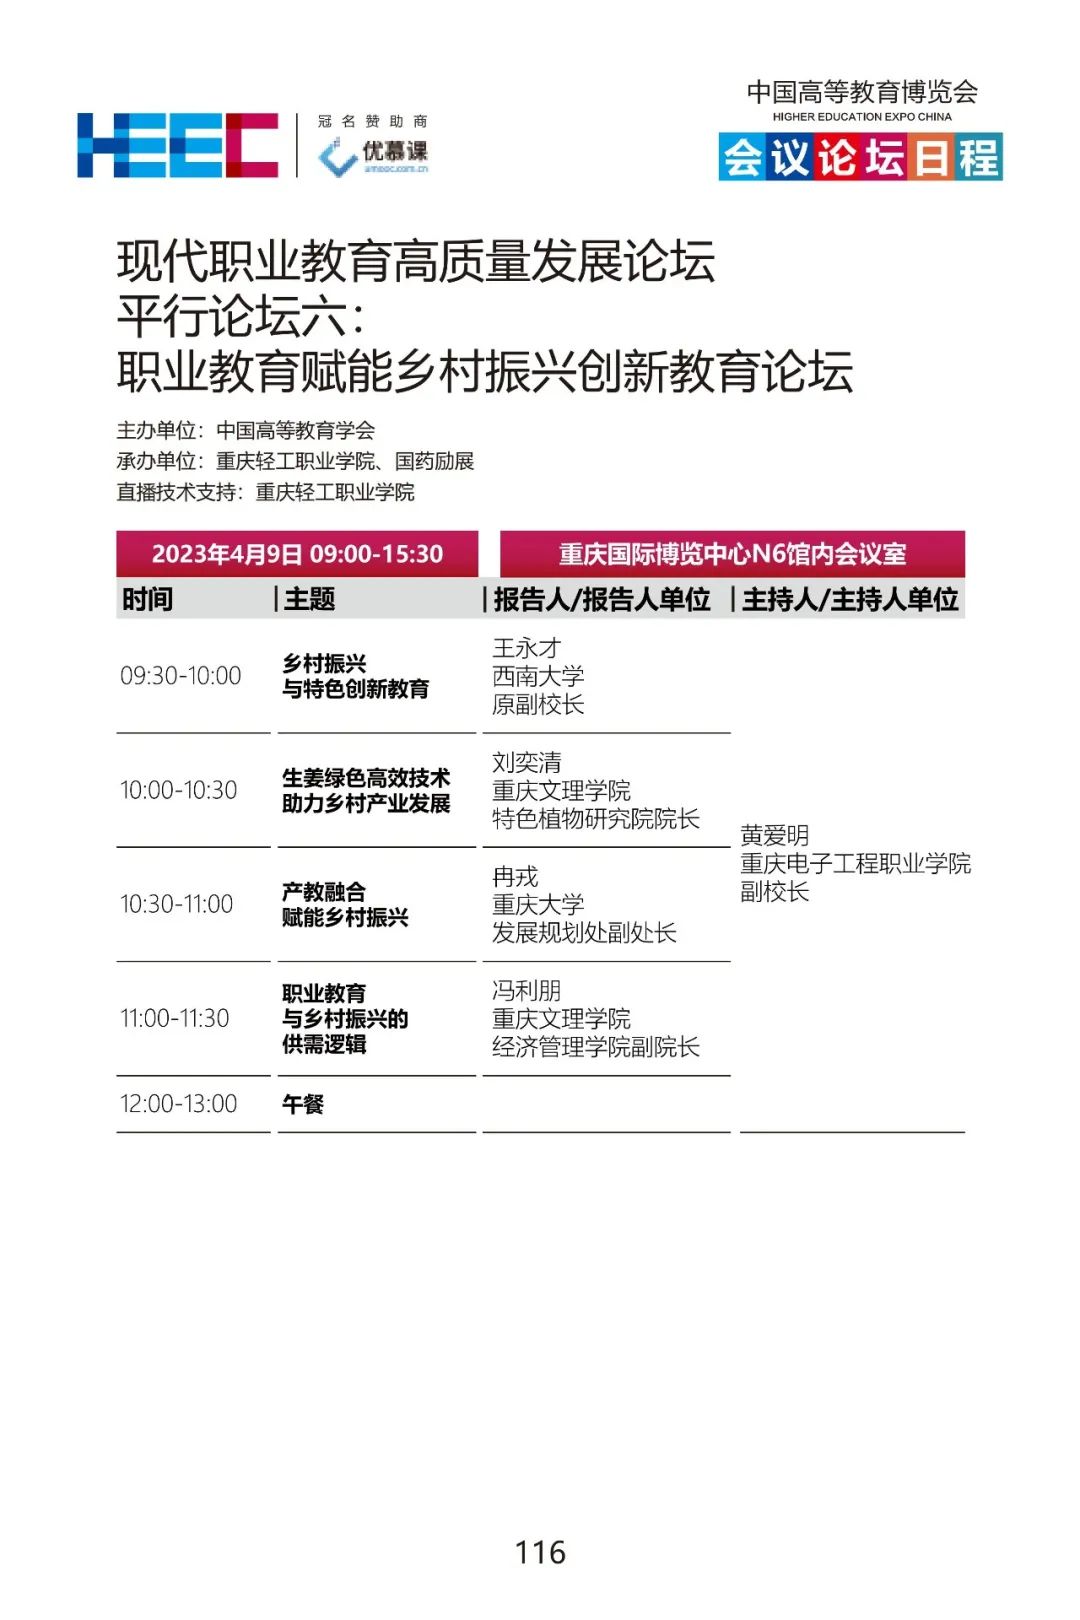 第58·59届中国高等教育博览会活动日程